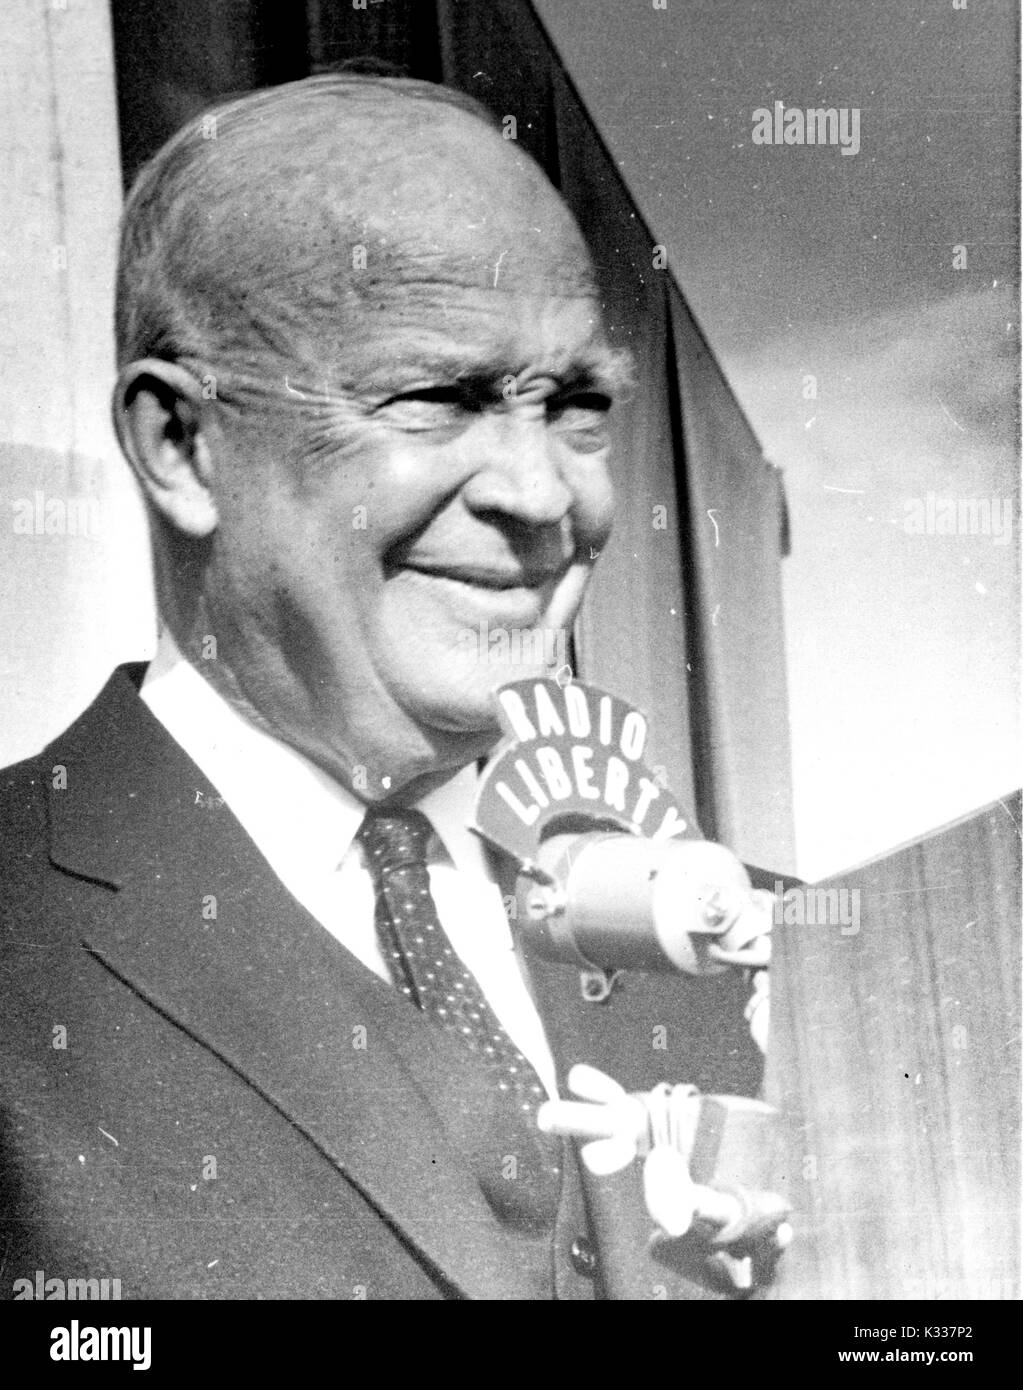 Portrait de Candide 34e président des États-Unis Dwight D. Eisenhower discours d'enregistrement pour la Radio Liberté, 1963. Banque D'Images